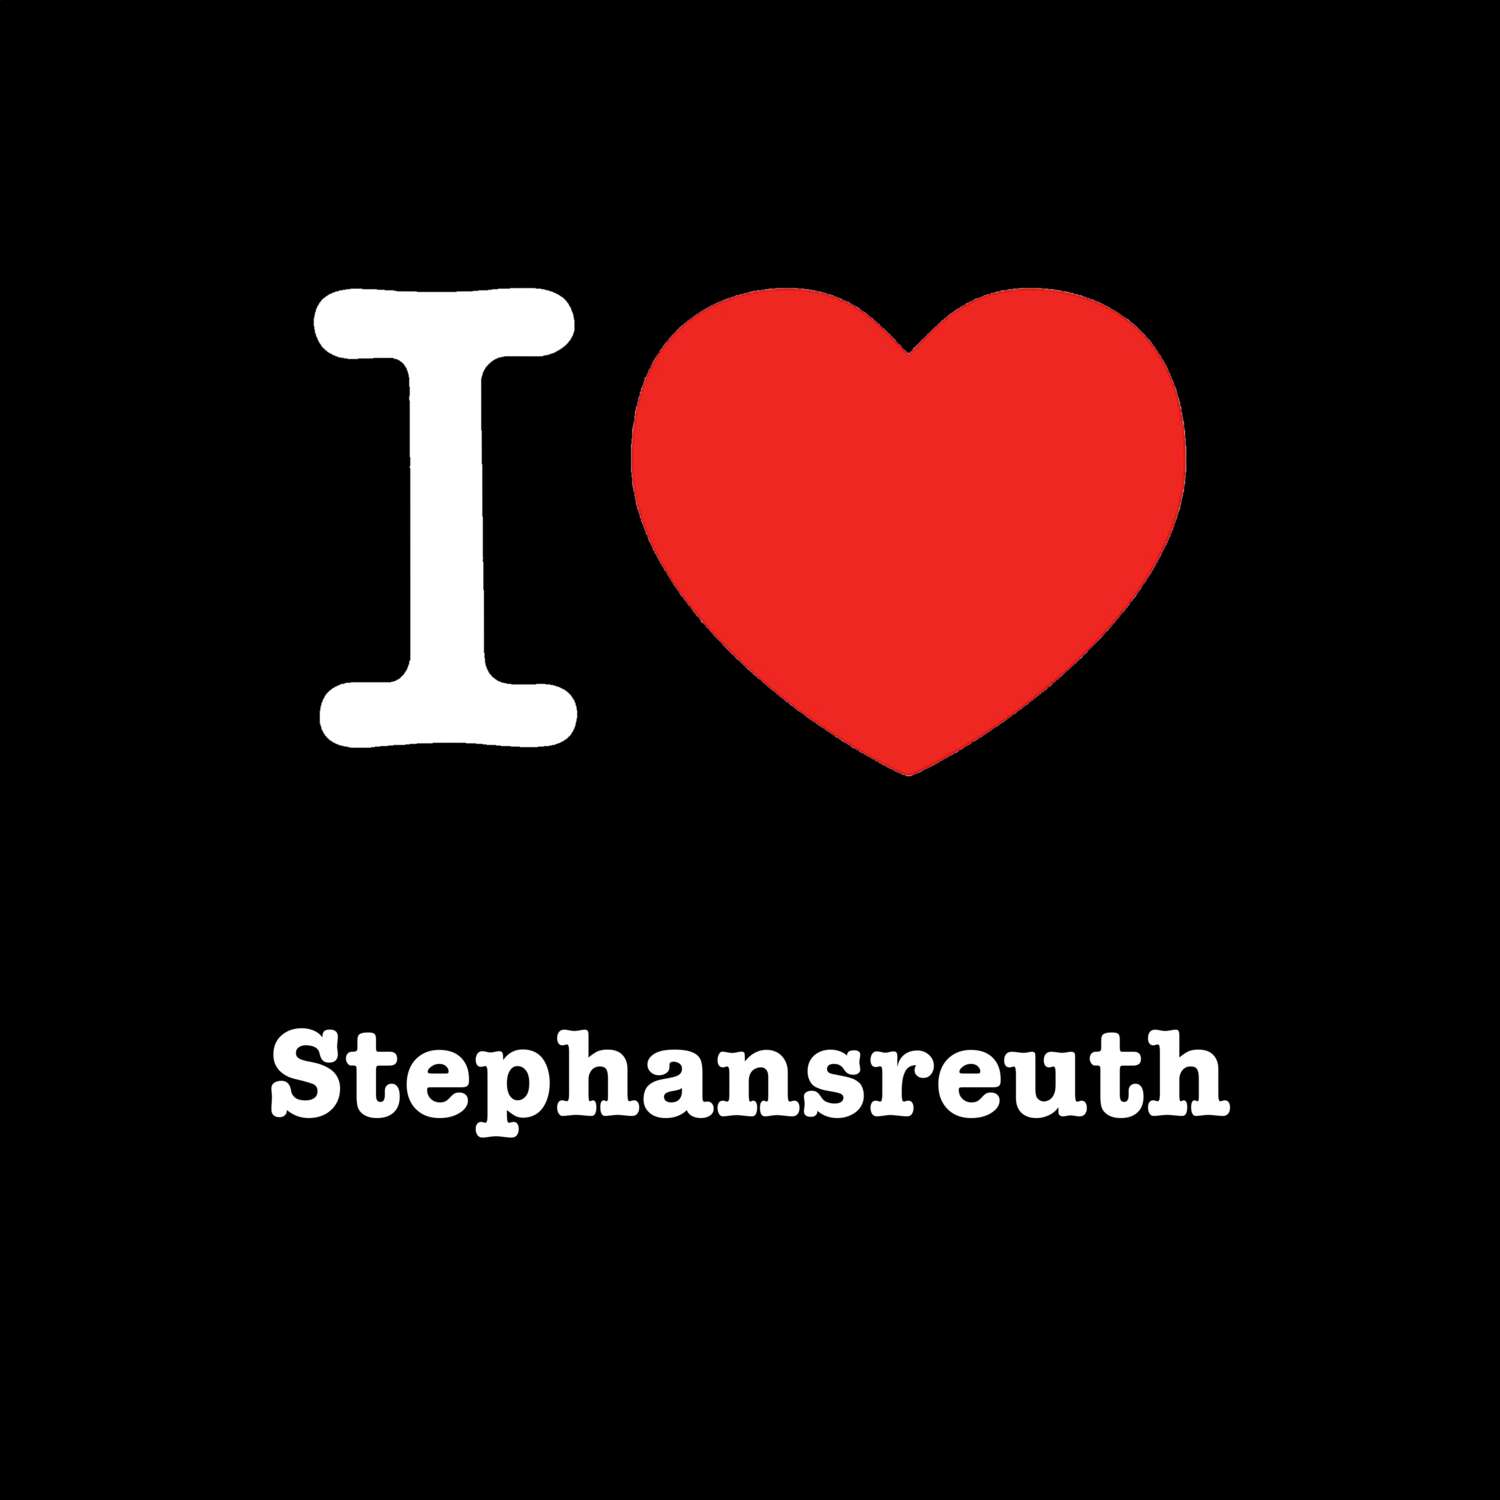 Stephansreuth T-Shirt »I love«